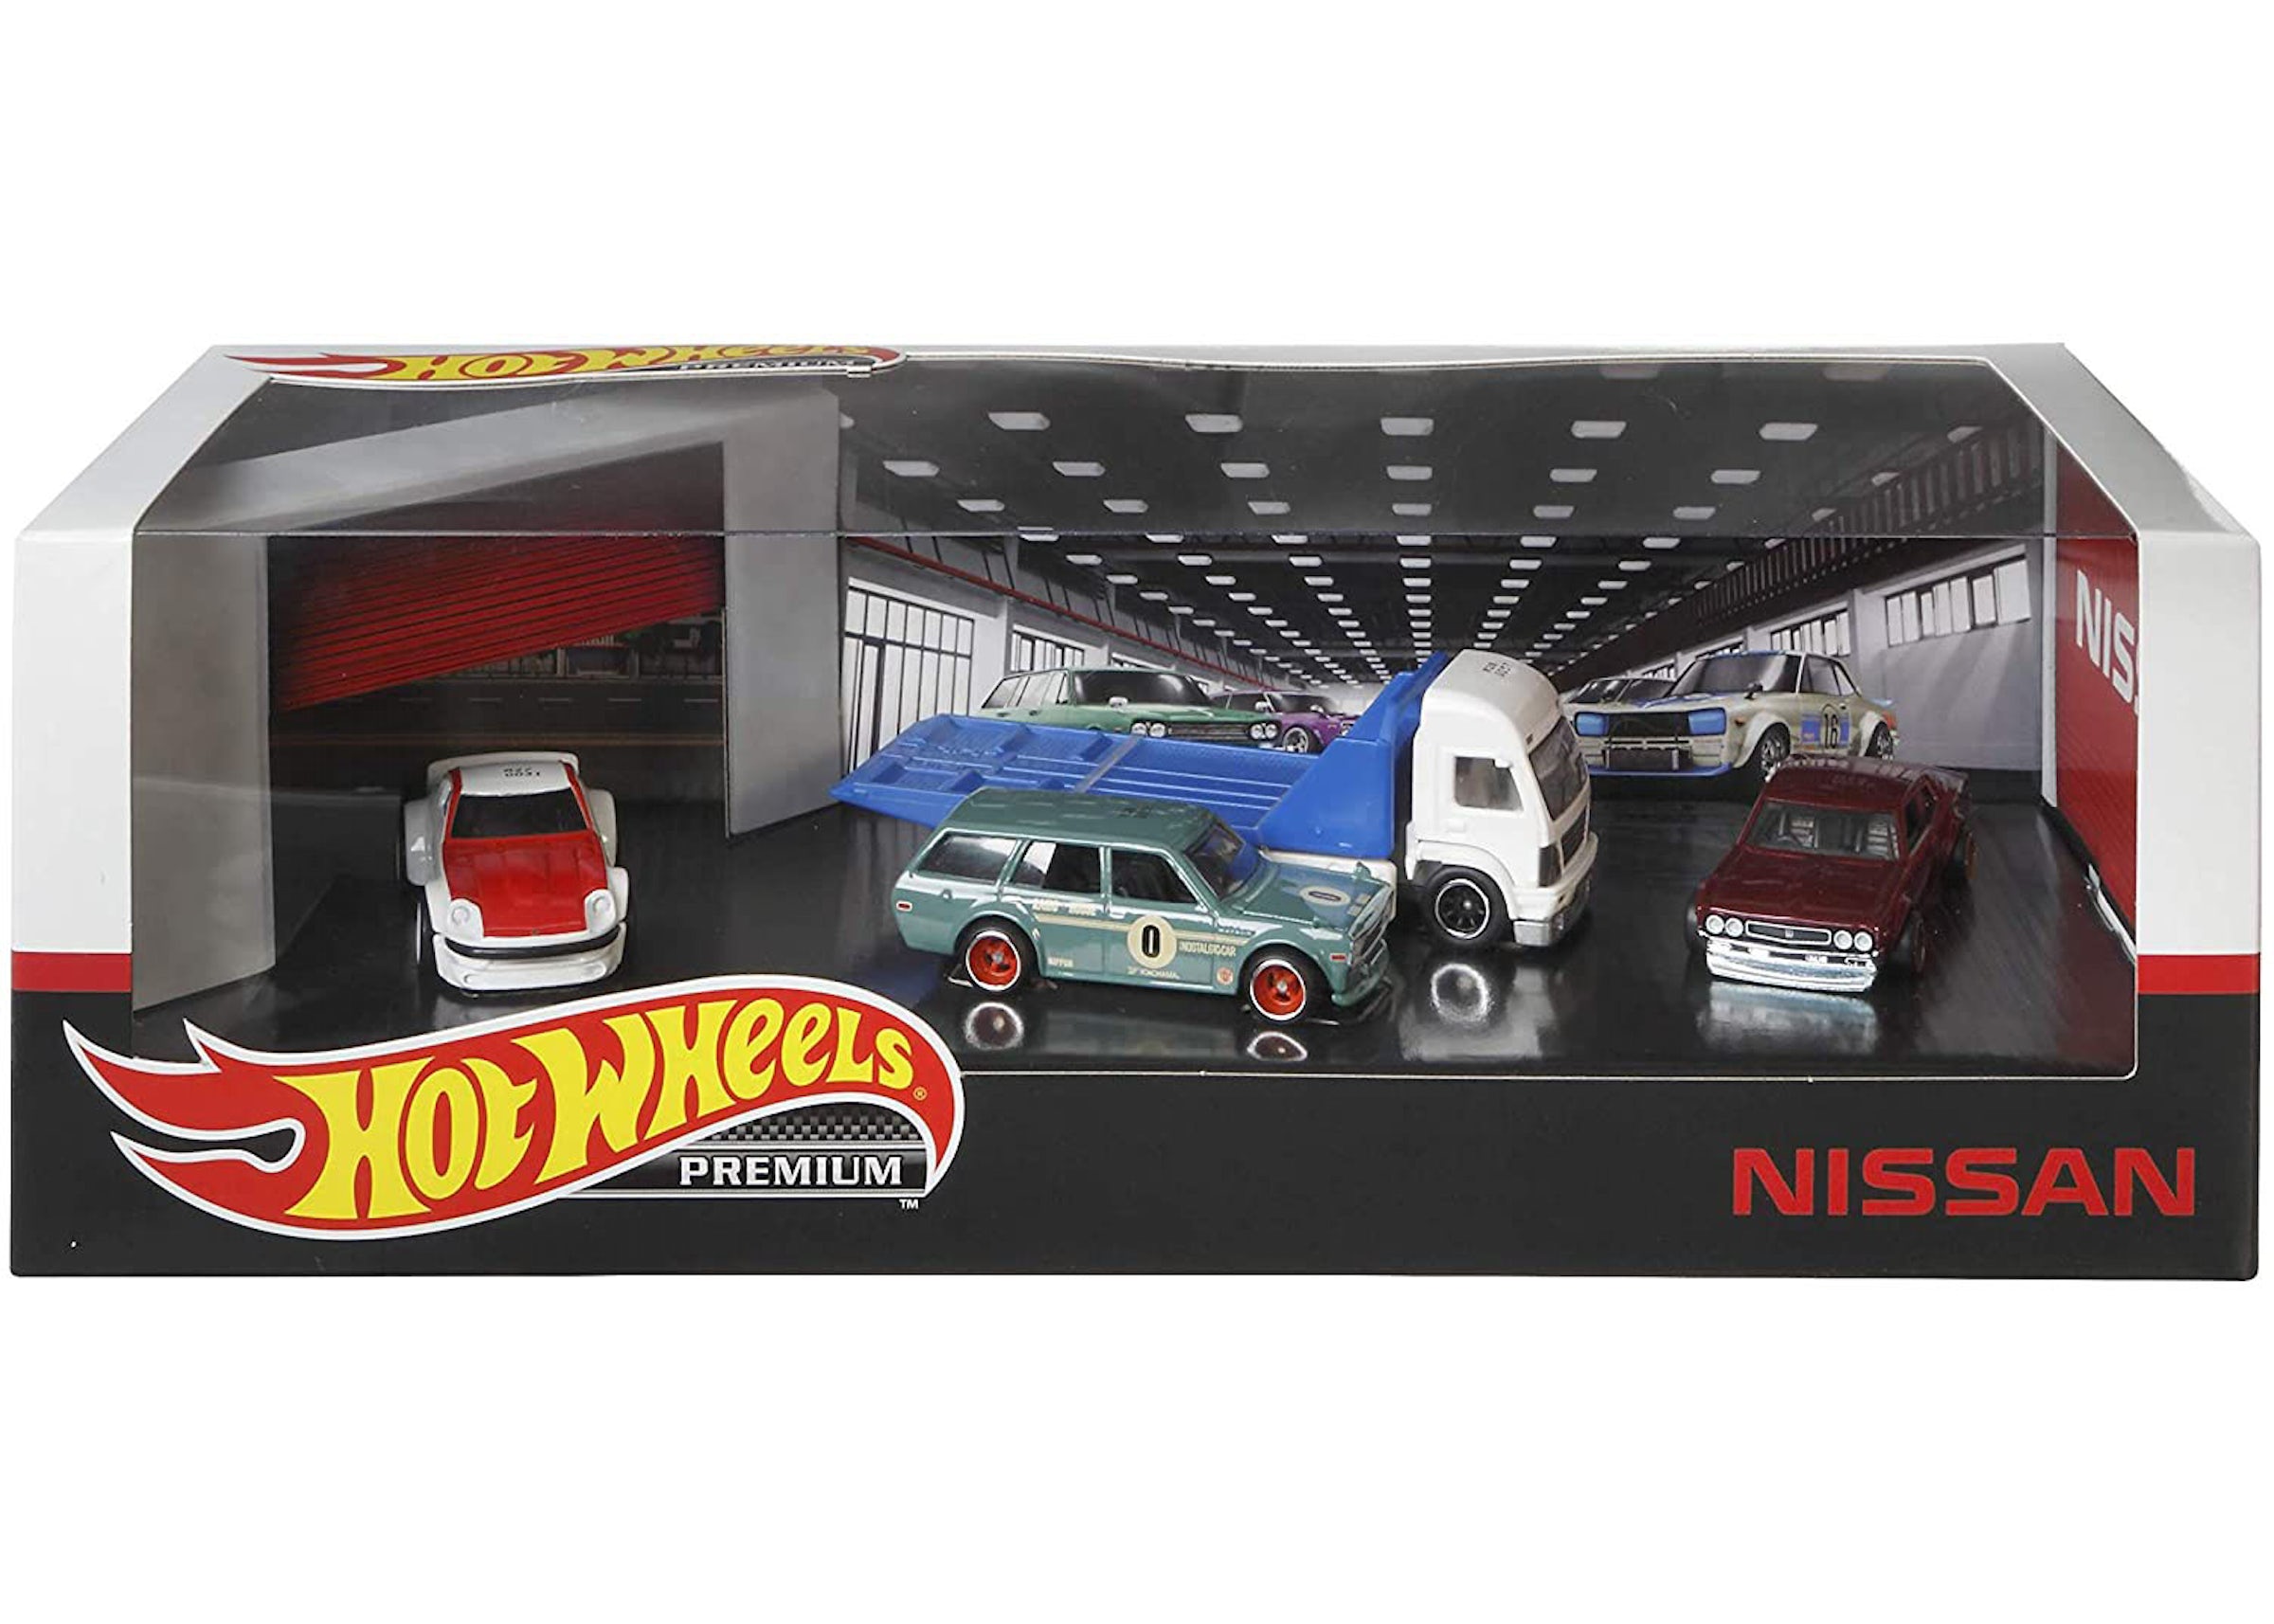 Hot Wheels Premium Collectors Nissan Set